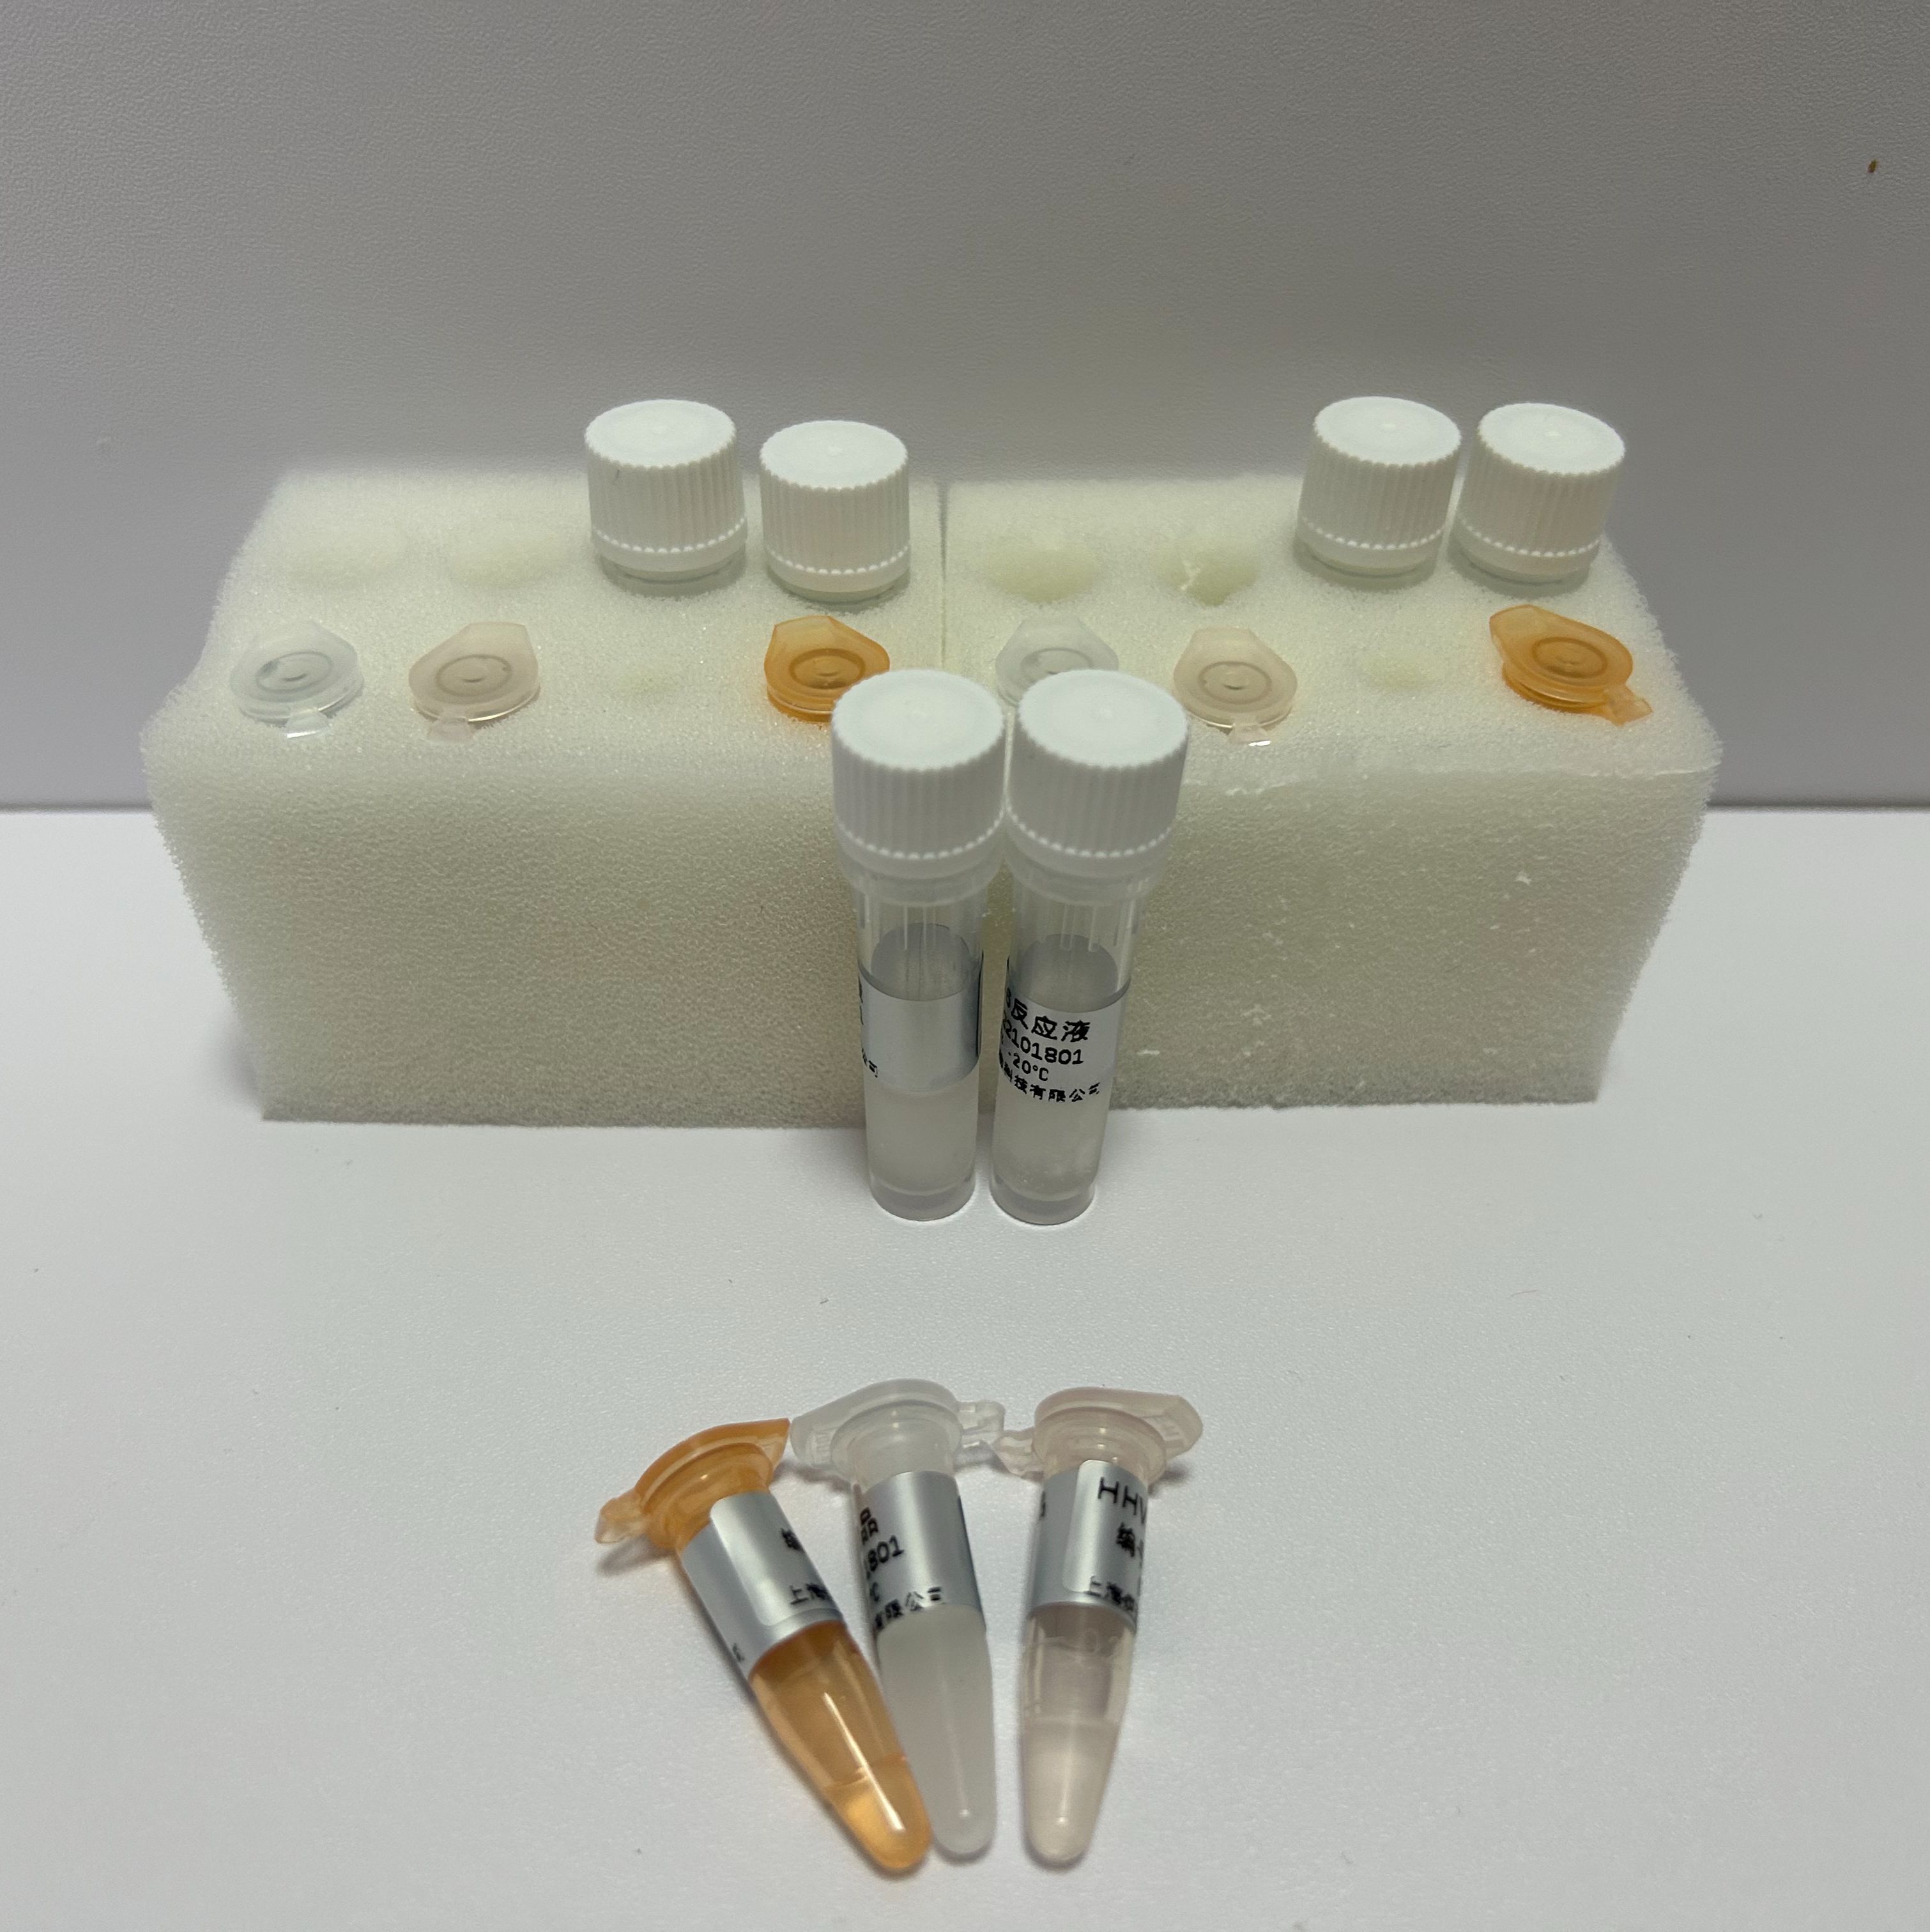 巴西诺卡菌探针法荧光定量PCR试剂盒